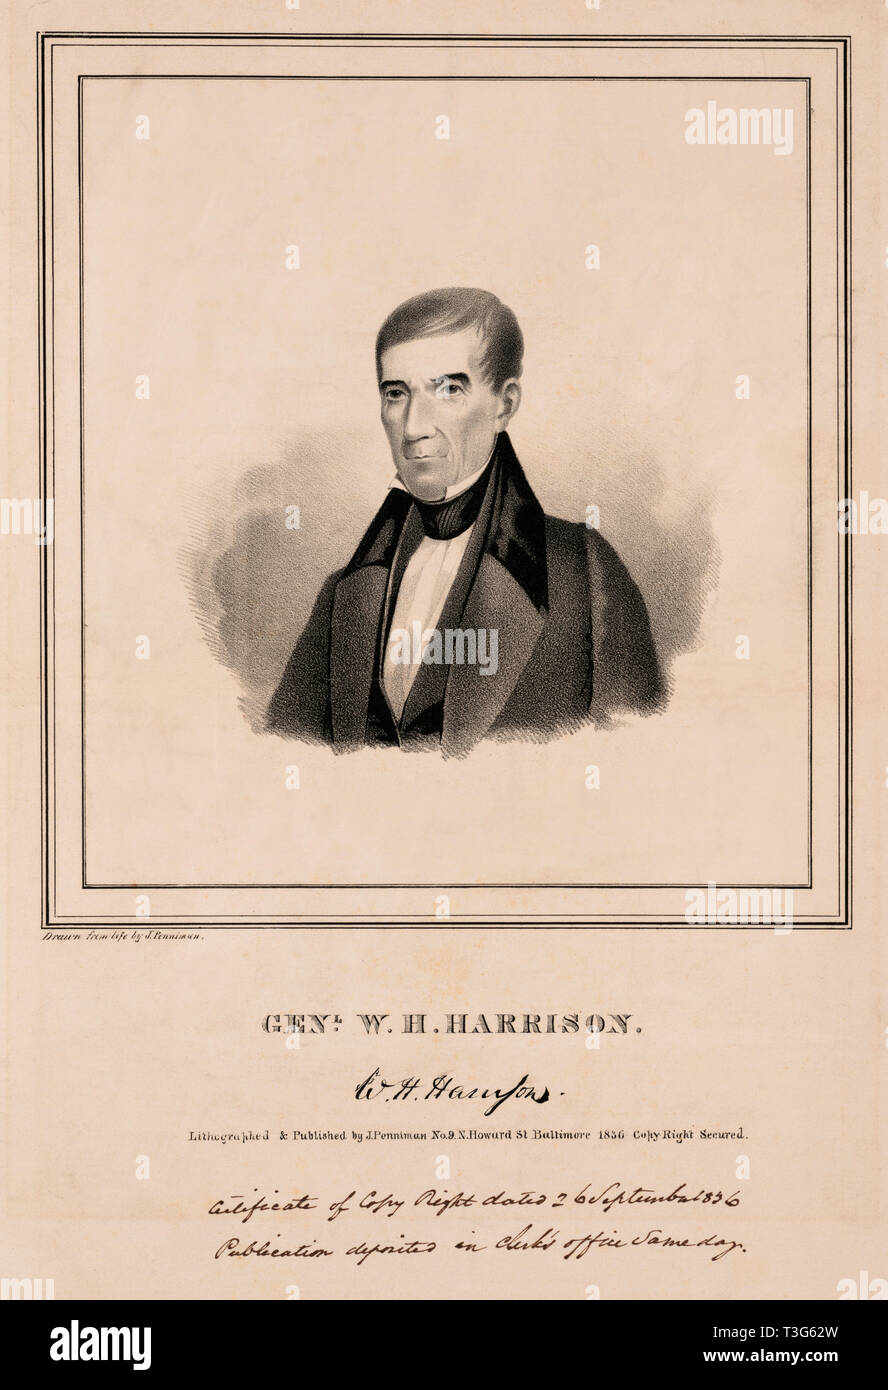 Genl. W.H. Harrison, aus dem Leben von J. Penniman, lithographierte & von J. Penniman, 1836 veröffentlicht wurde Stockfoto